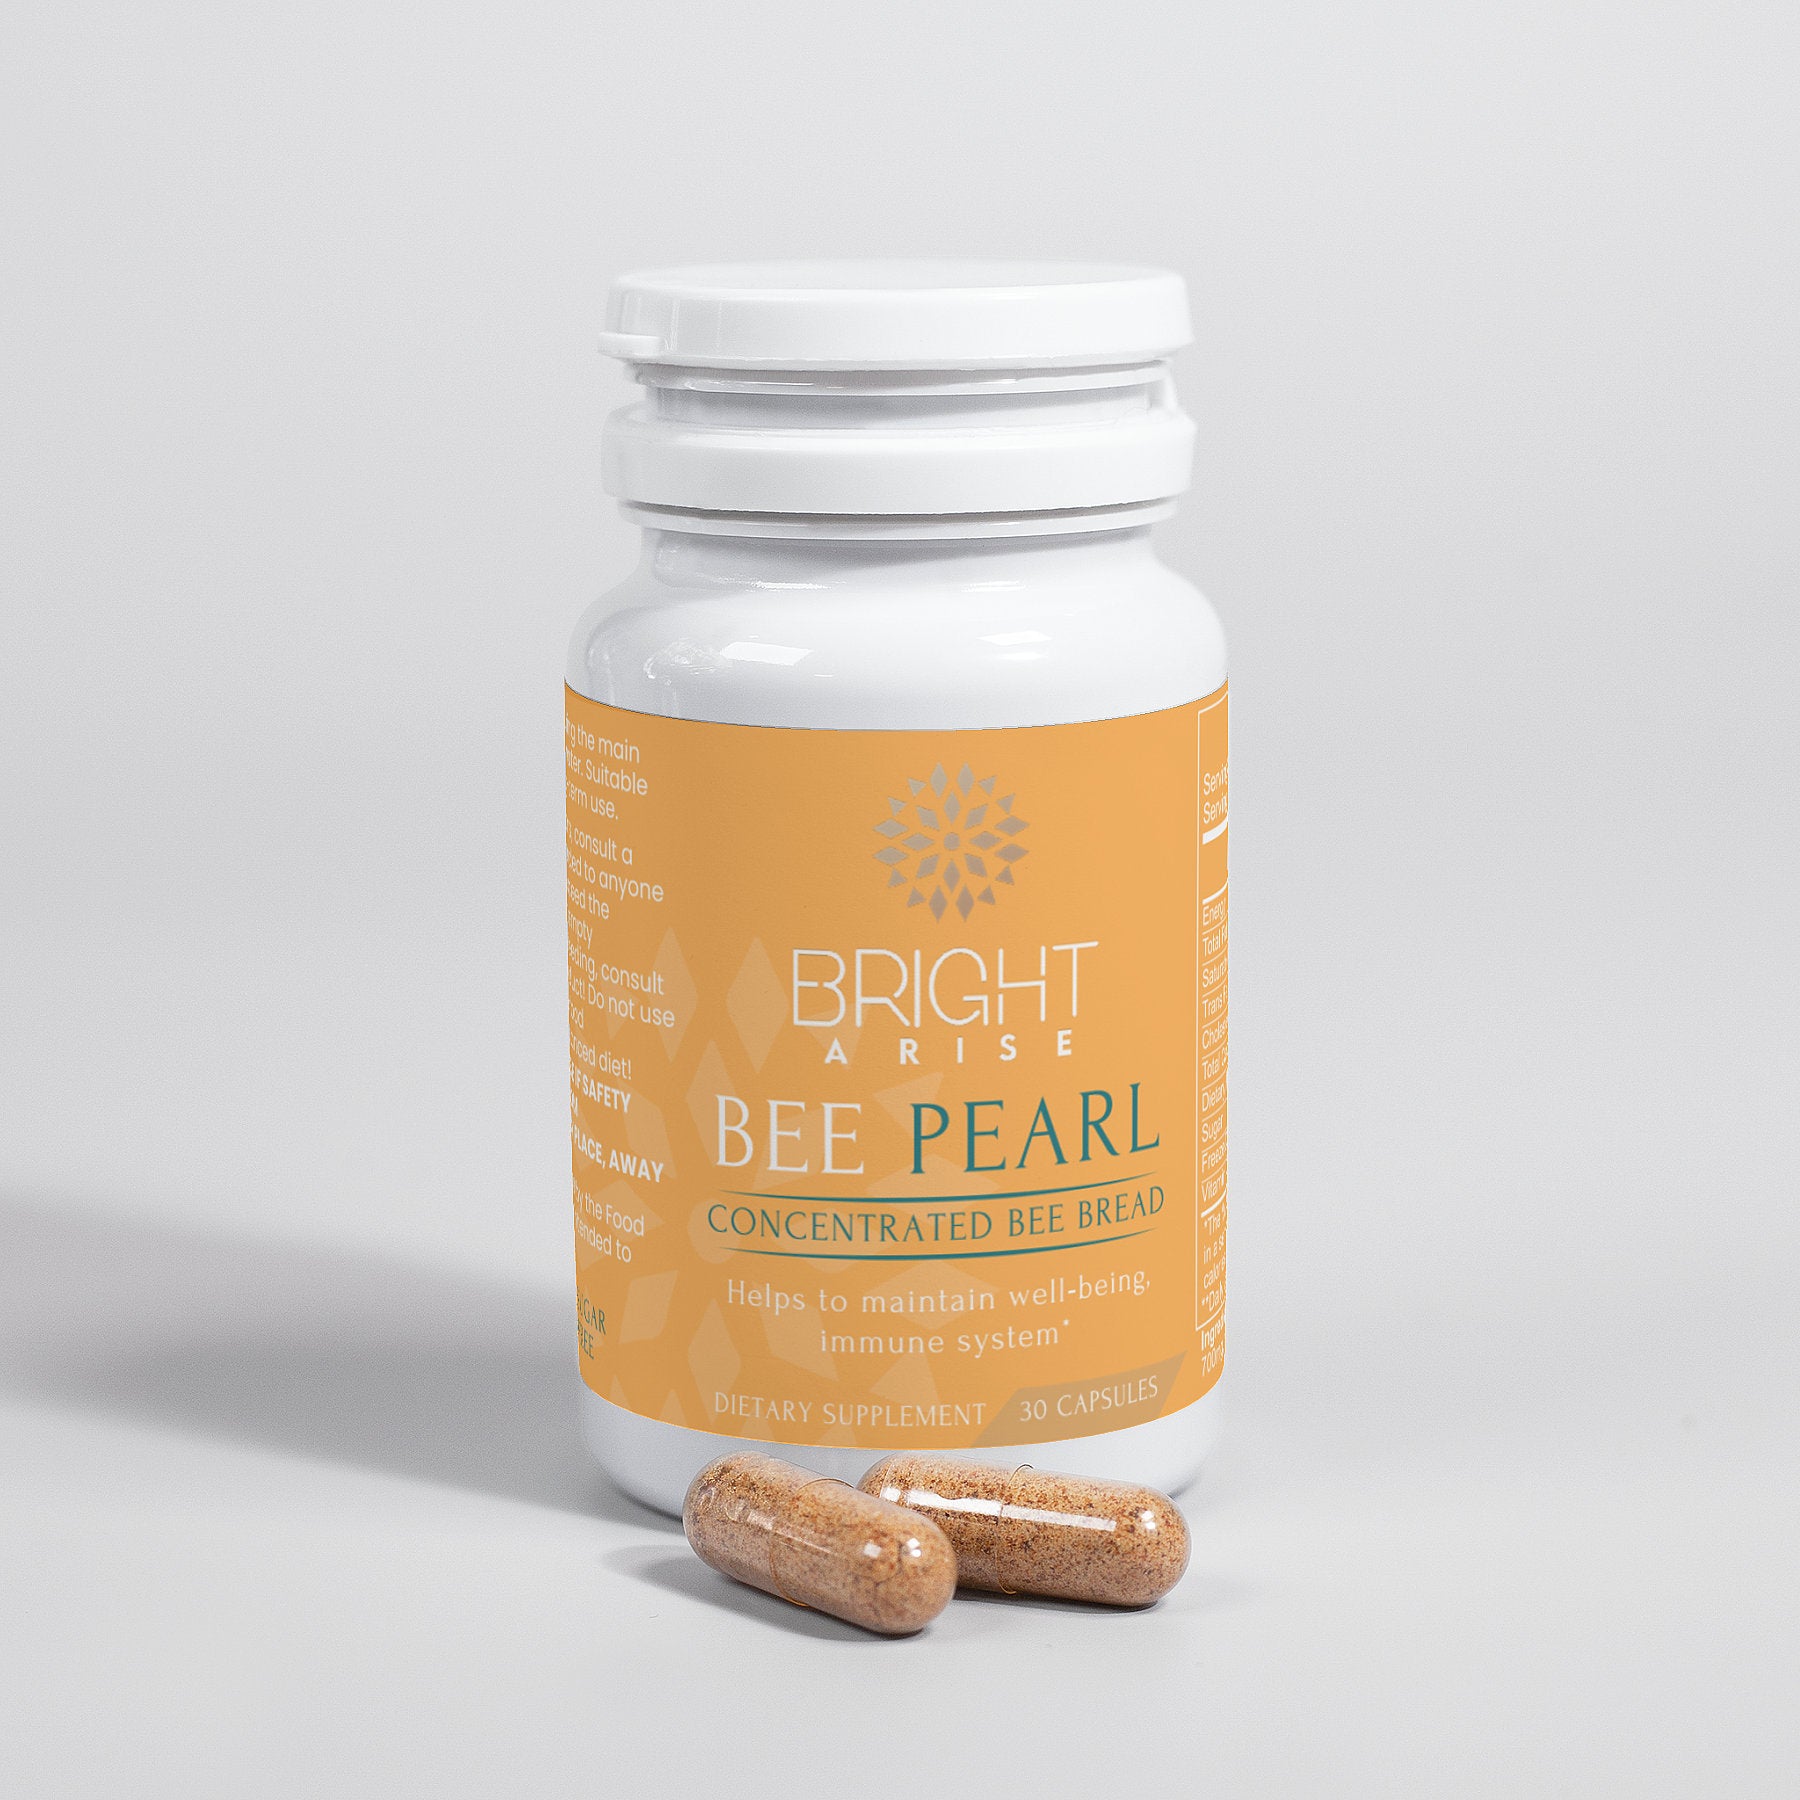 Bee Pearl Capsule | brightarisenutrition